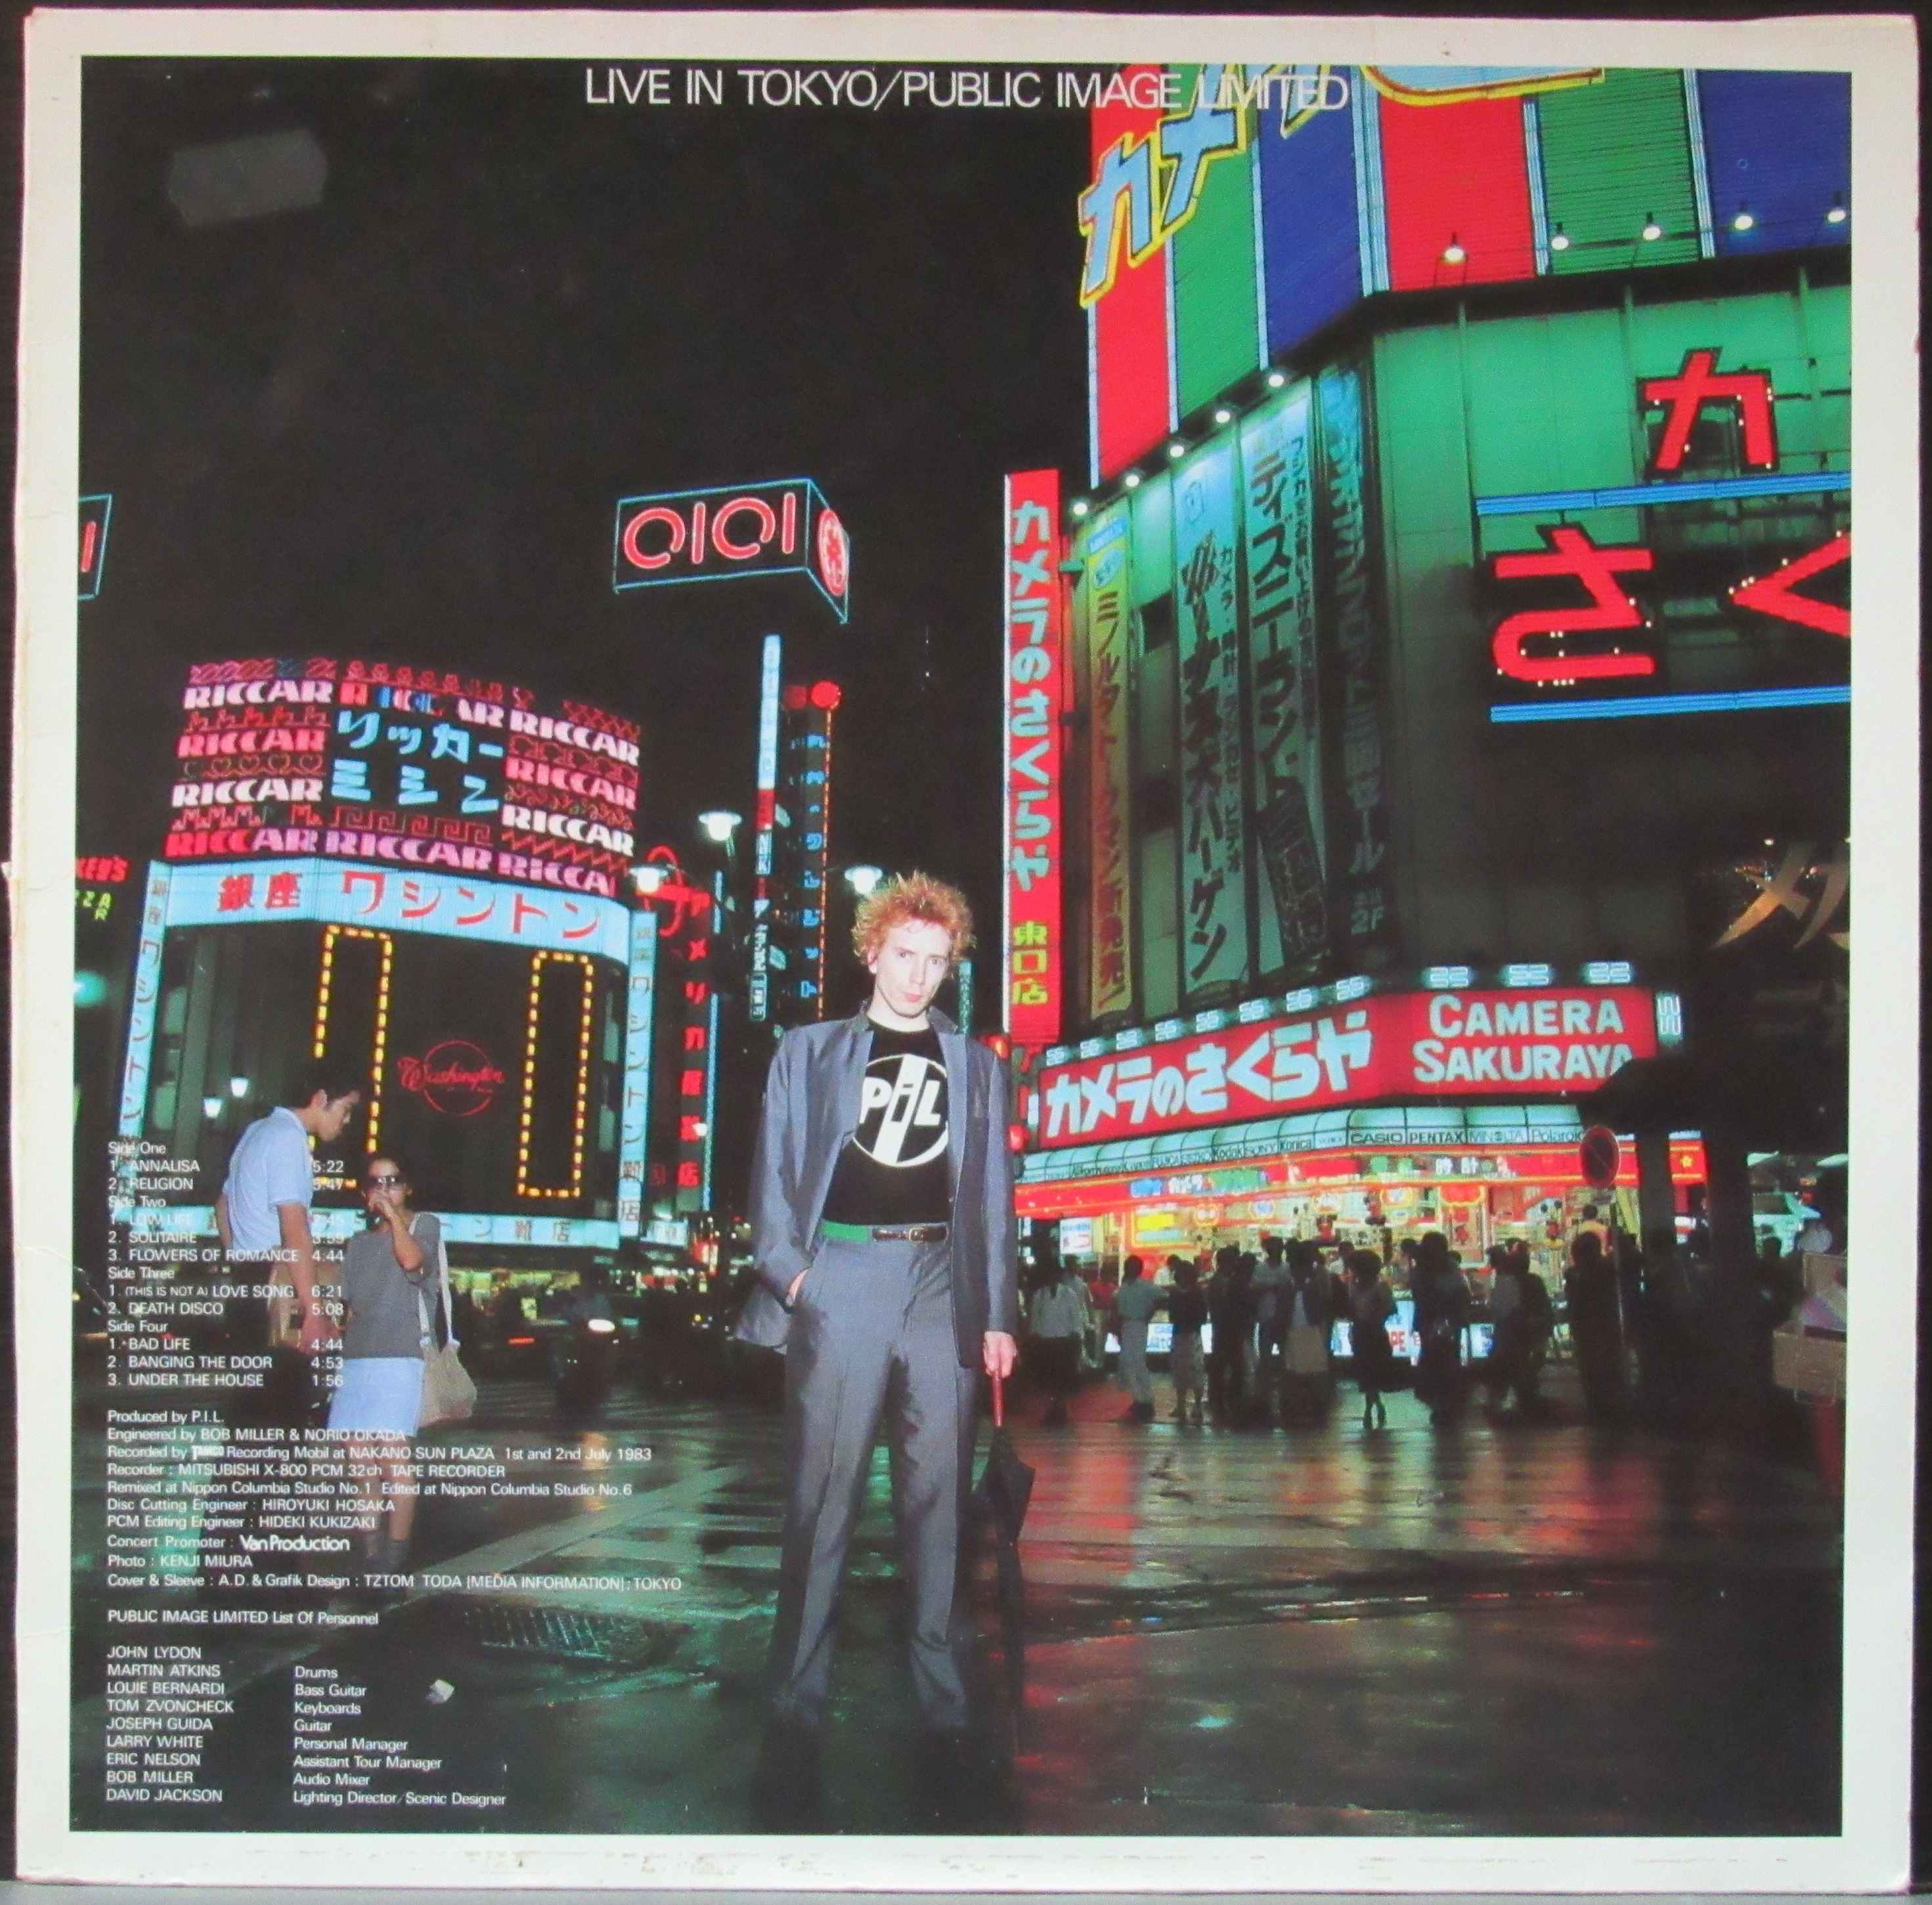 Tokyo living. Public image Ltd. Live in Tokyo 1983. Public image Ltd. Live in Tokyo. Public image Limited. Public image Limited Live in Tokyo.